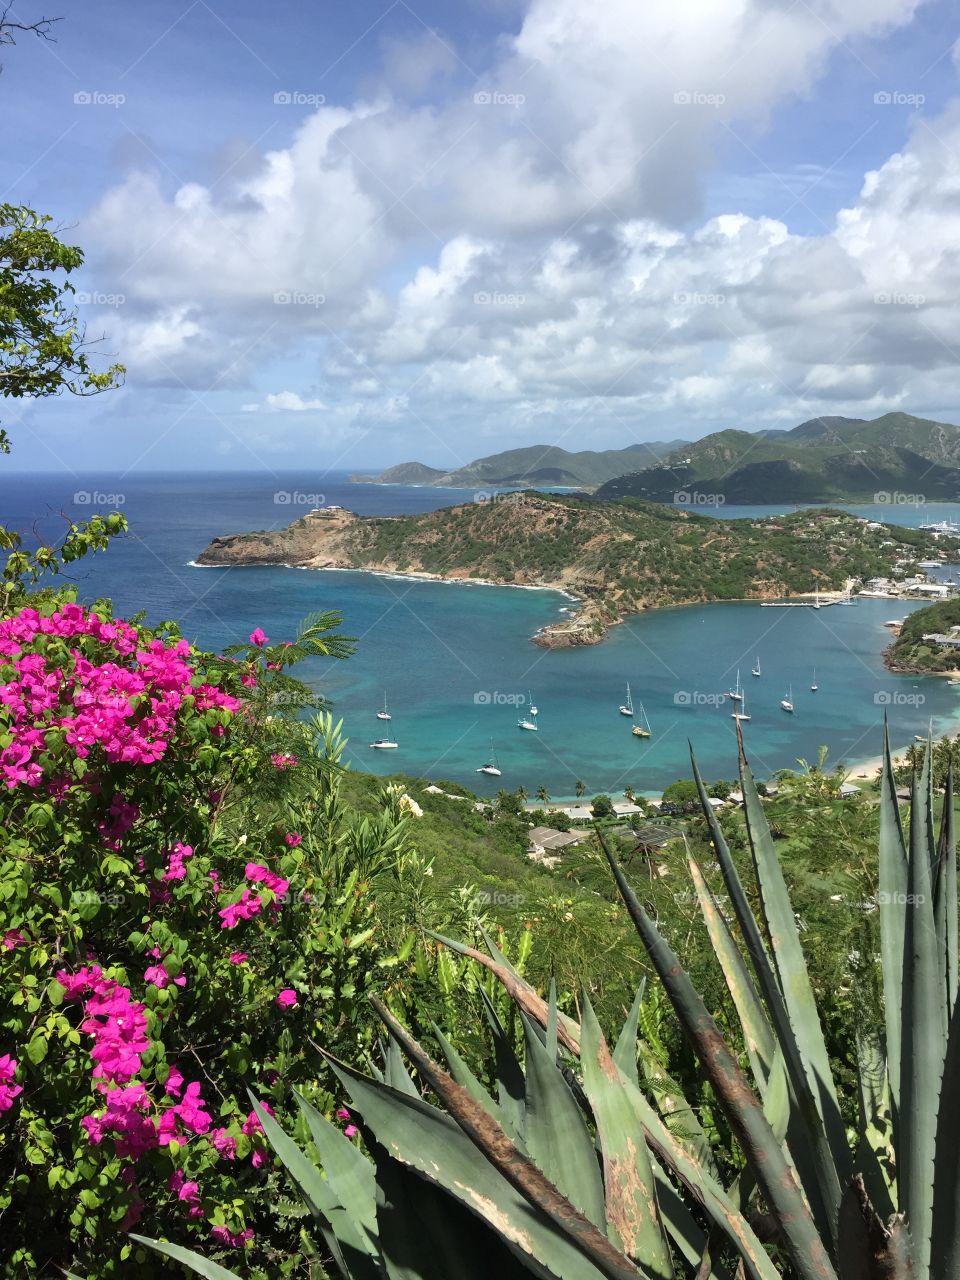 Barbuda views 